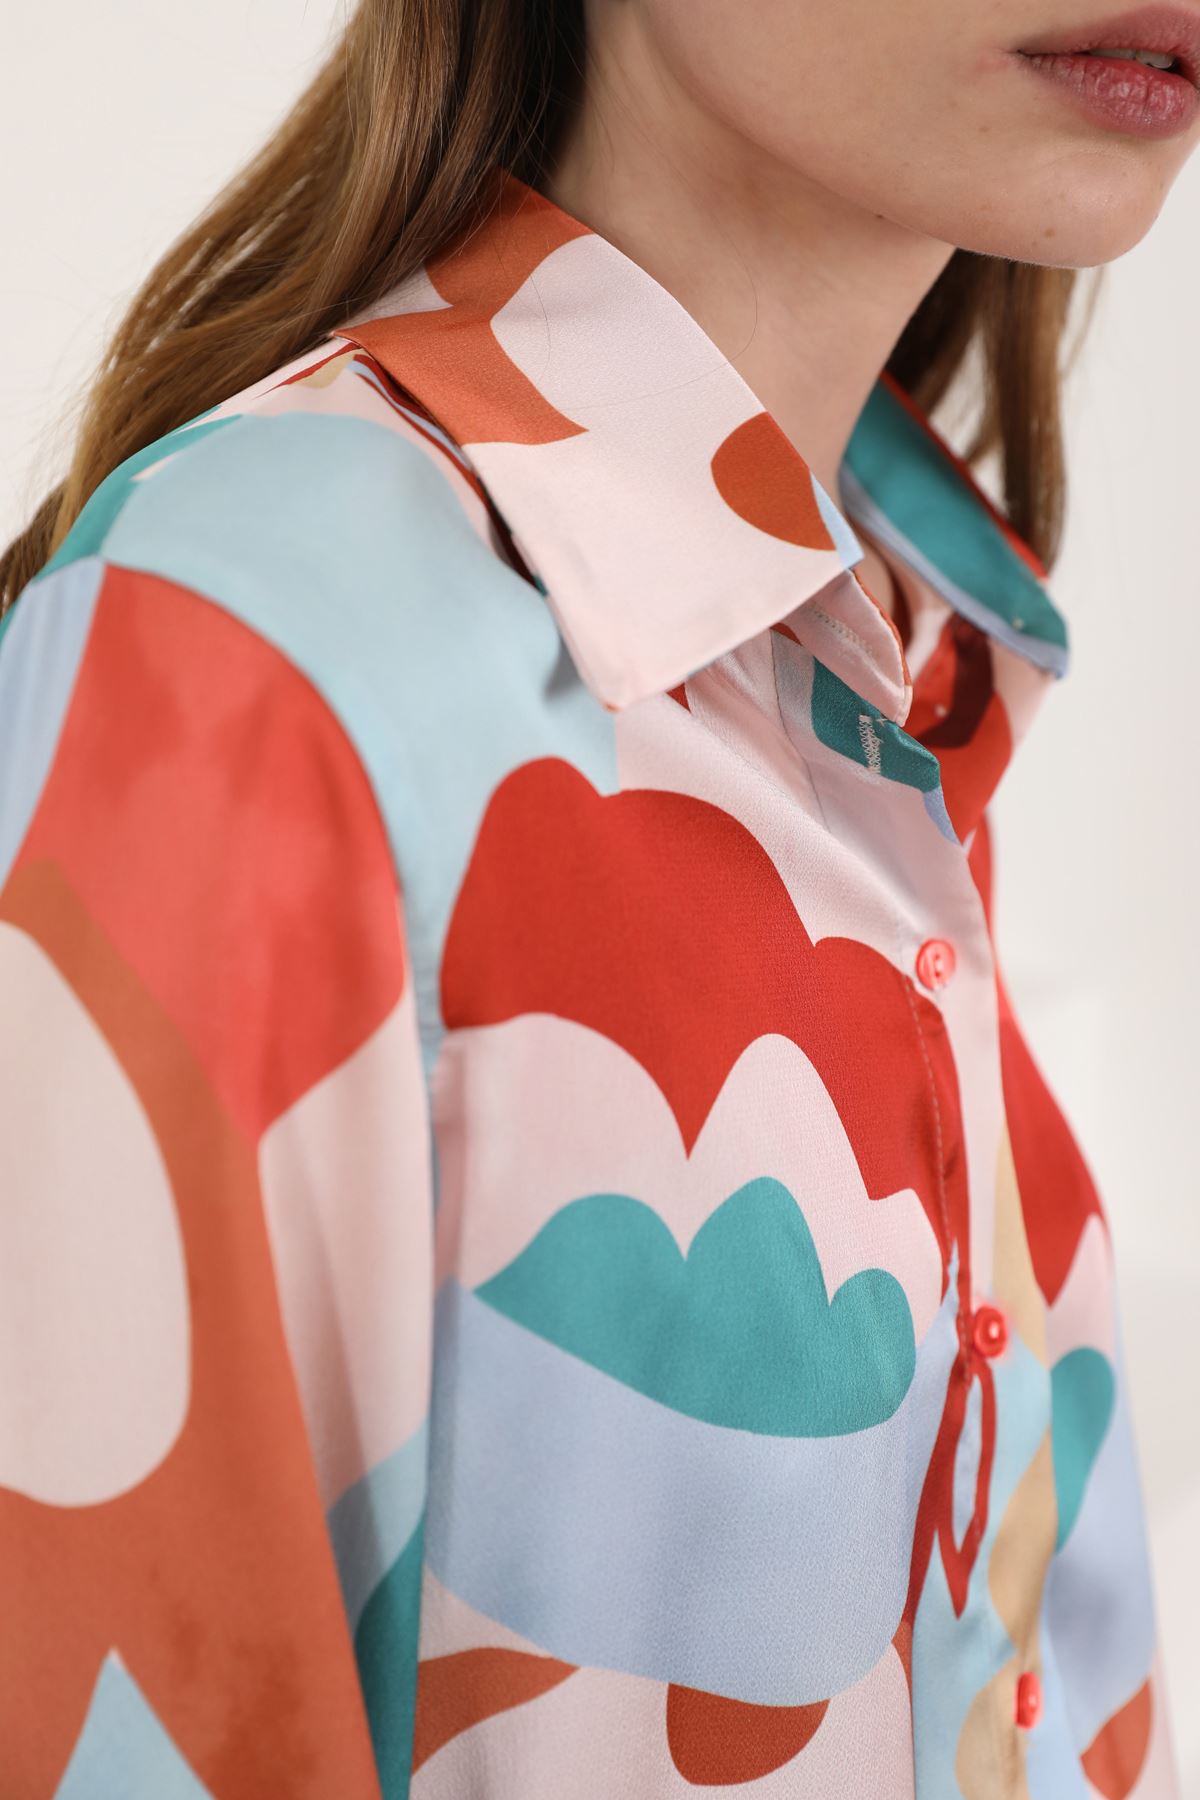 Женская рубашка Kobe с красочным цветочным узором из атласной ткани-корица